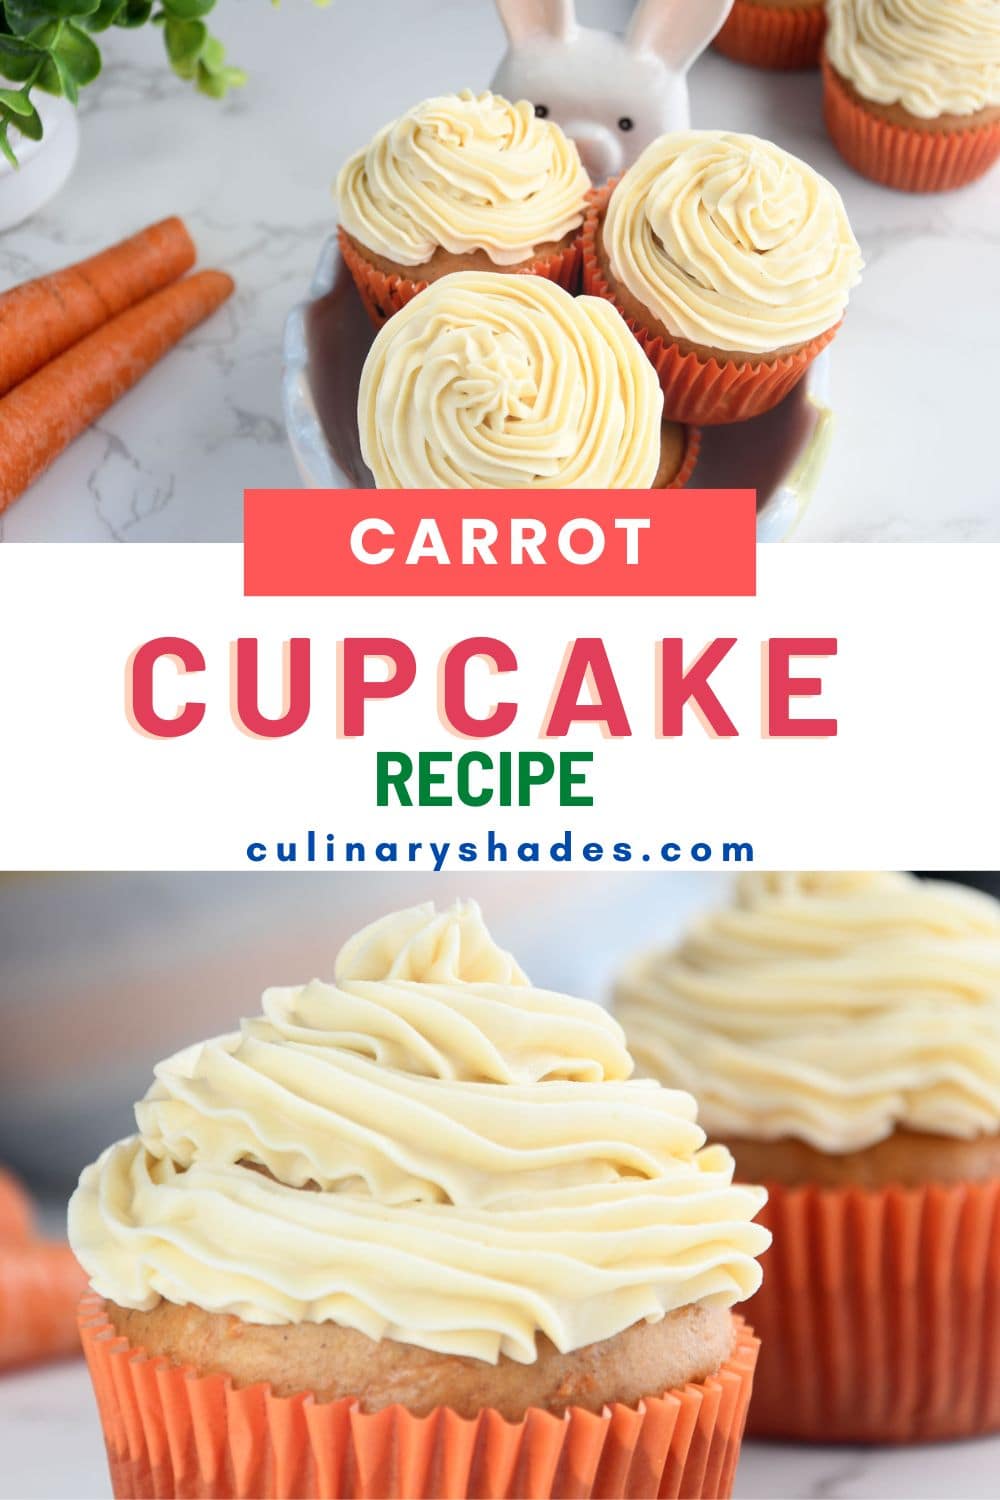 Carrot cupcakes.